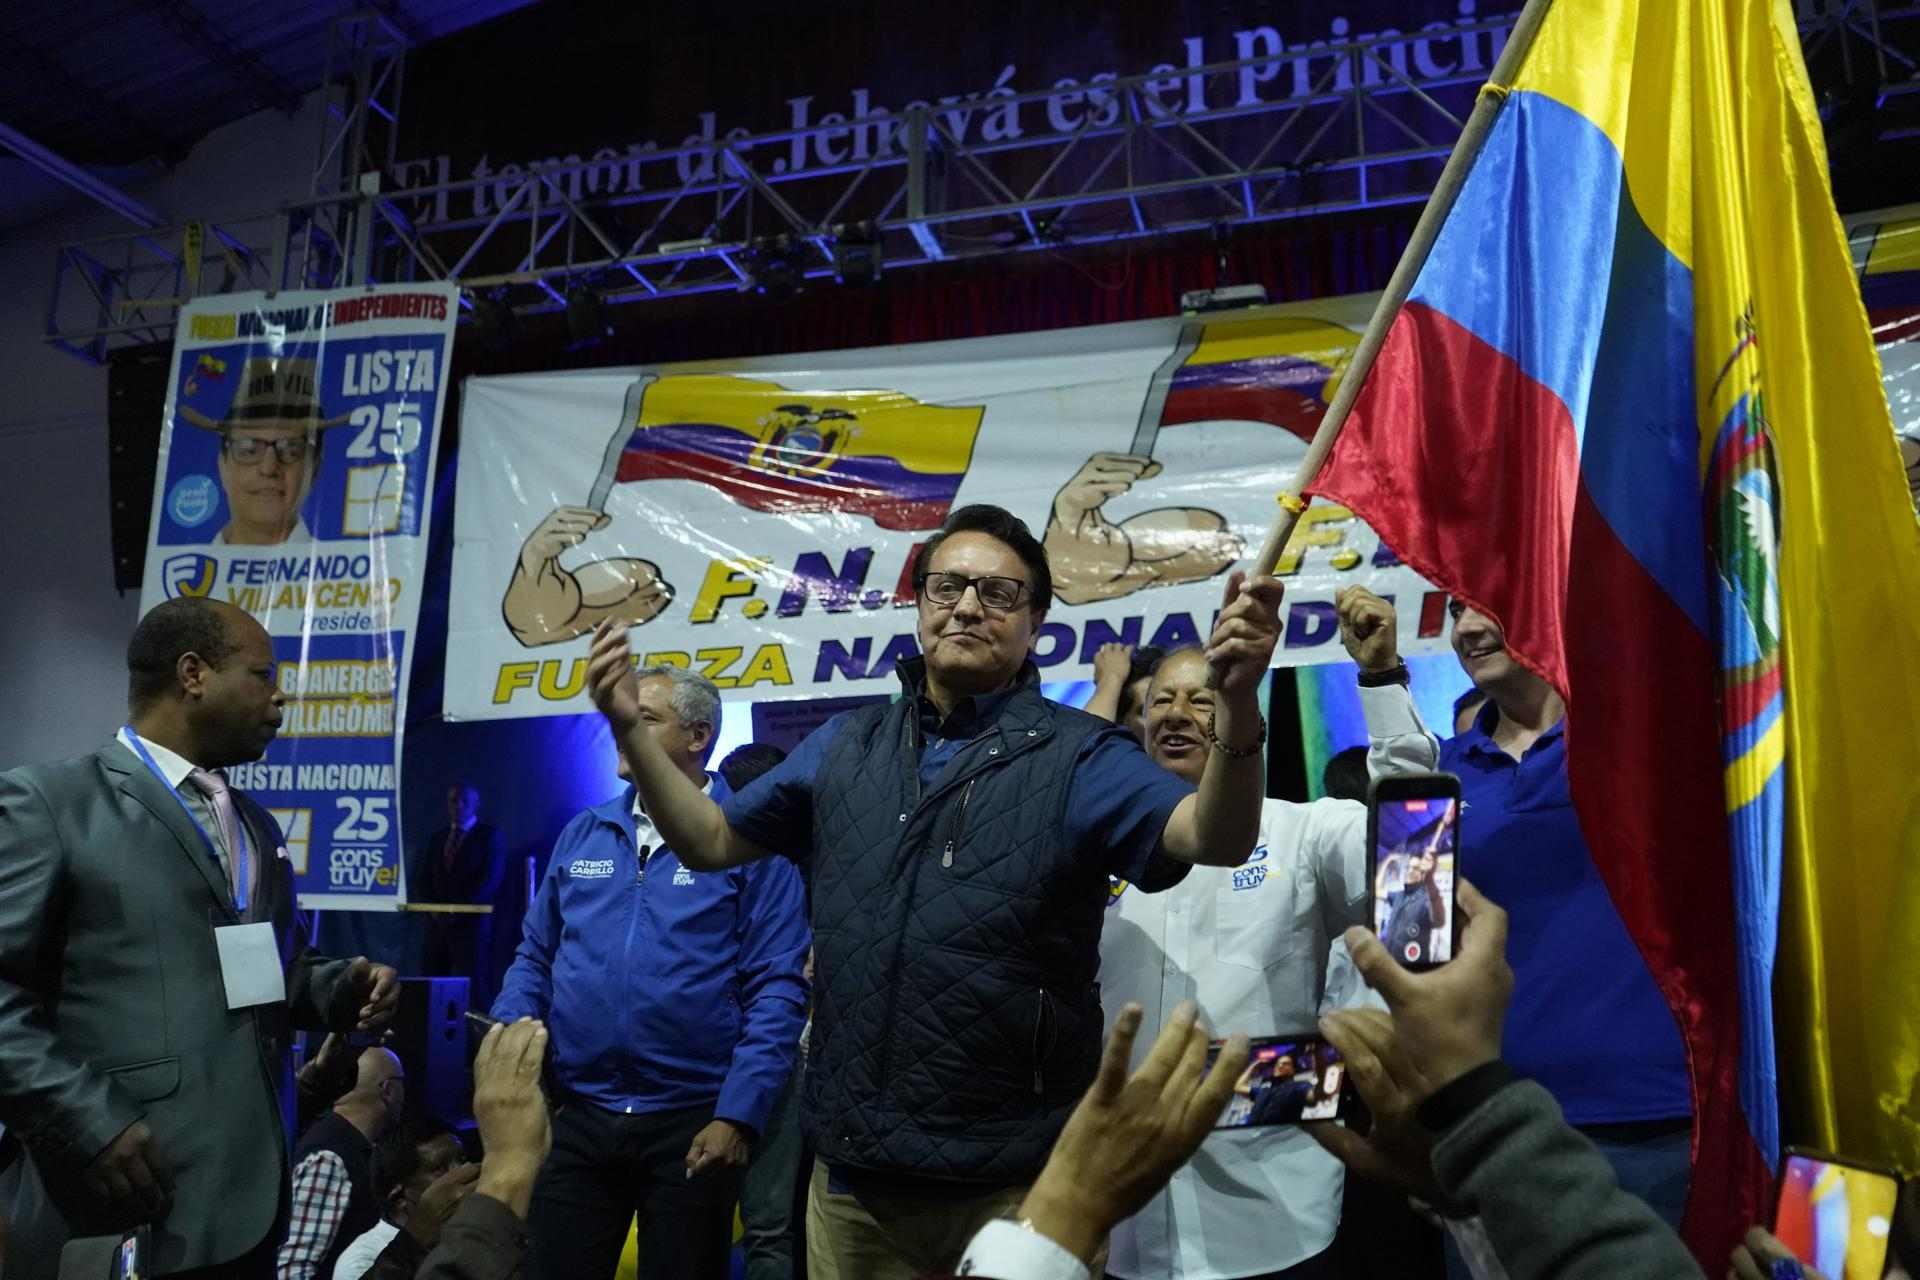 Qui era Fernando Villavicencio, el candidat presidencial assassinat a l'Equador?